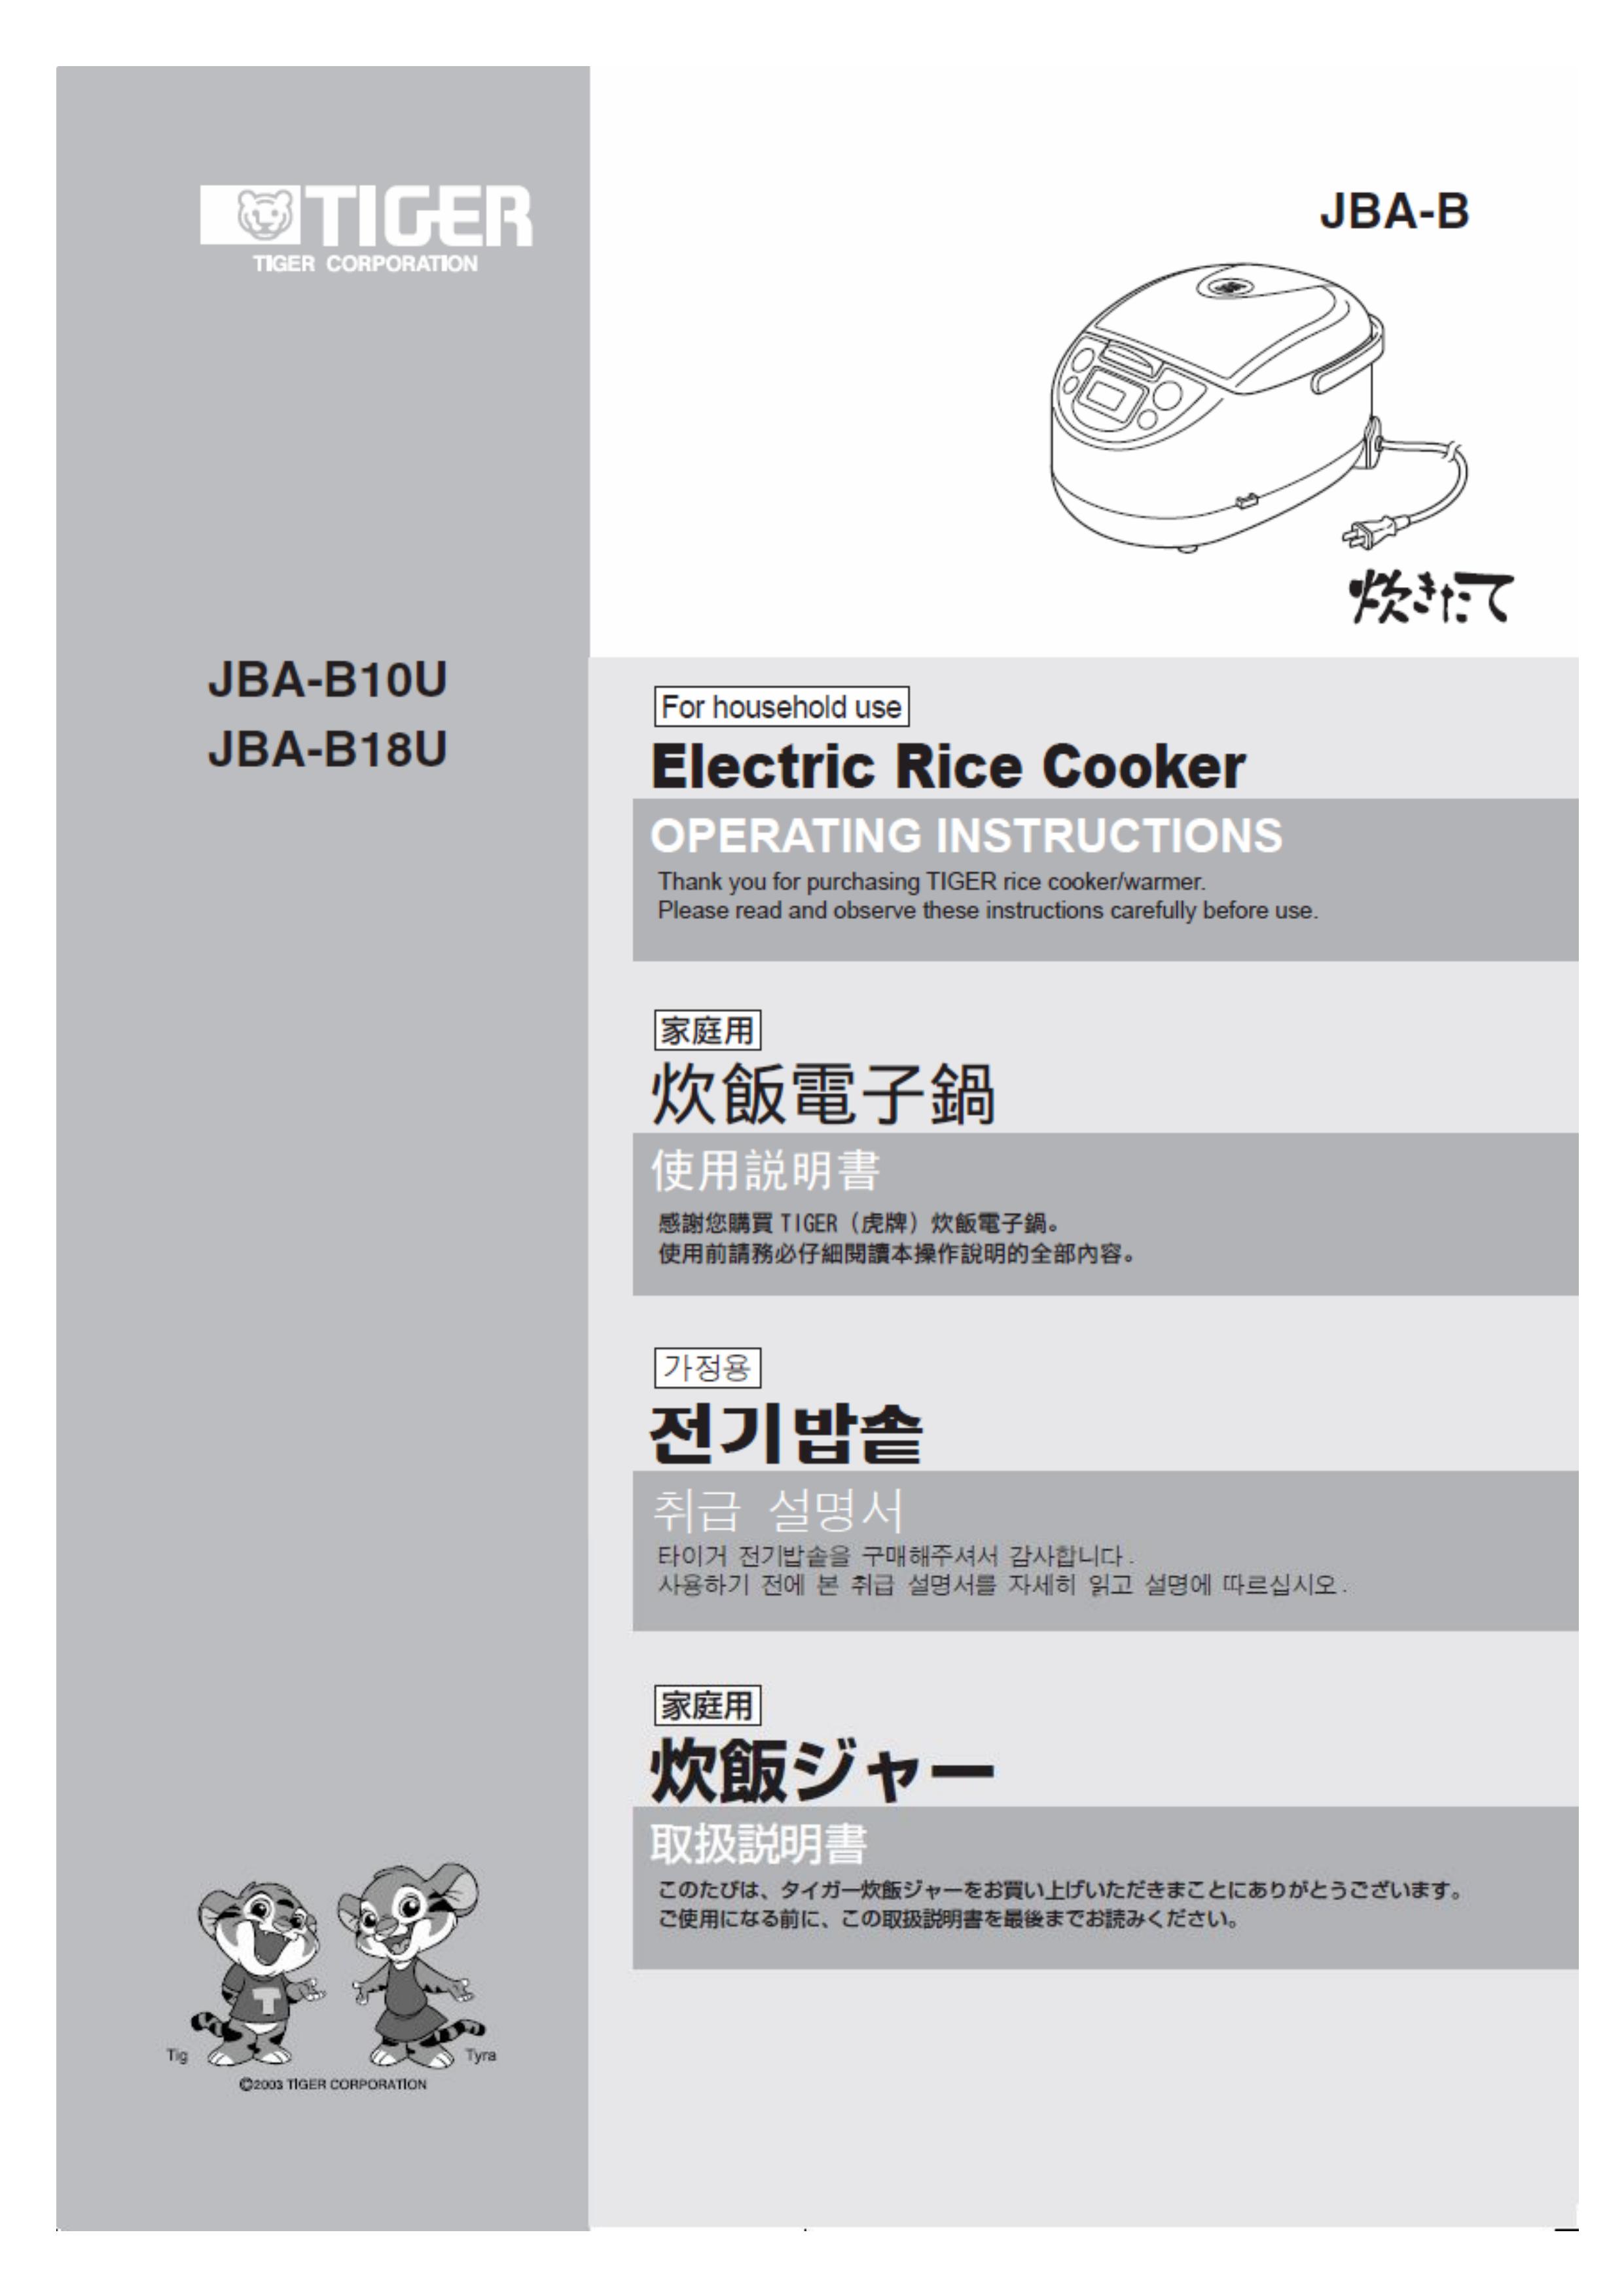 Tiger Products Co., Ltd JBA-B18U Rice Cooker User Manual